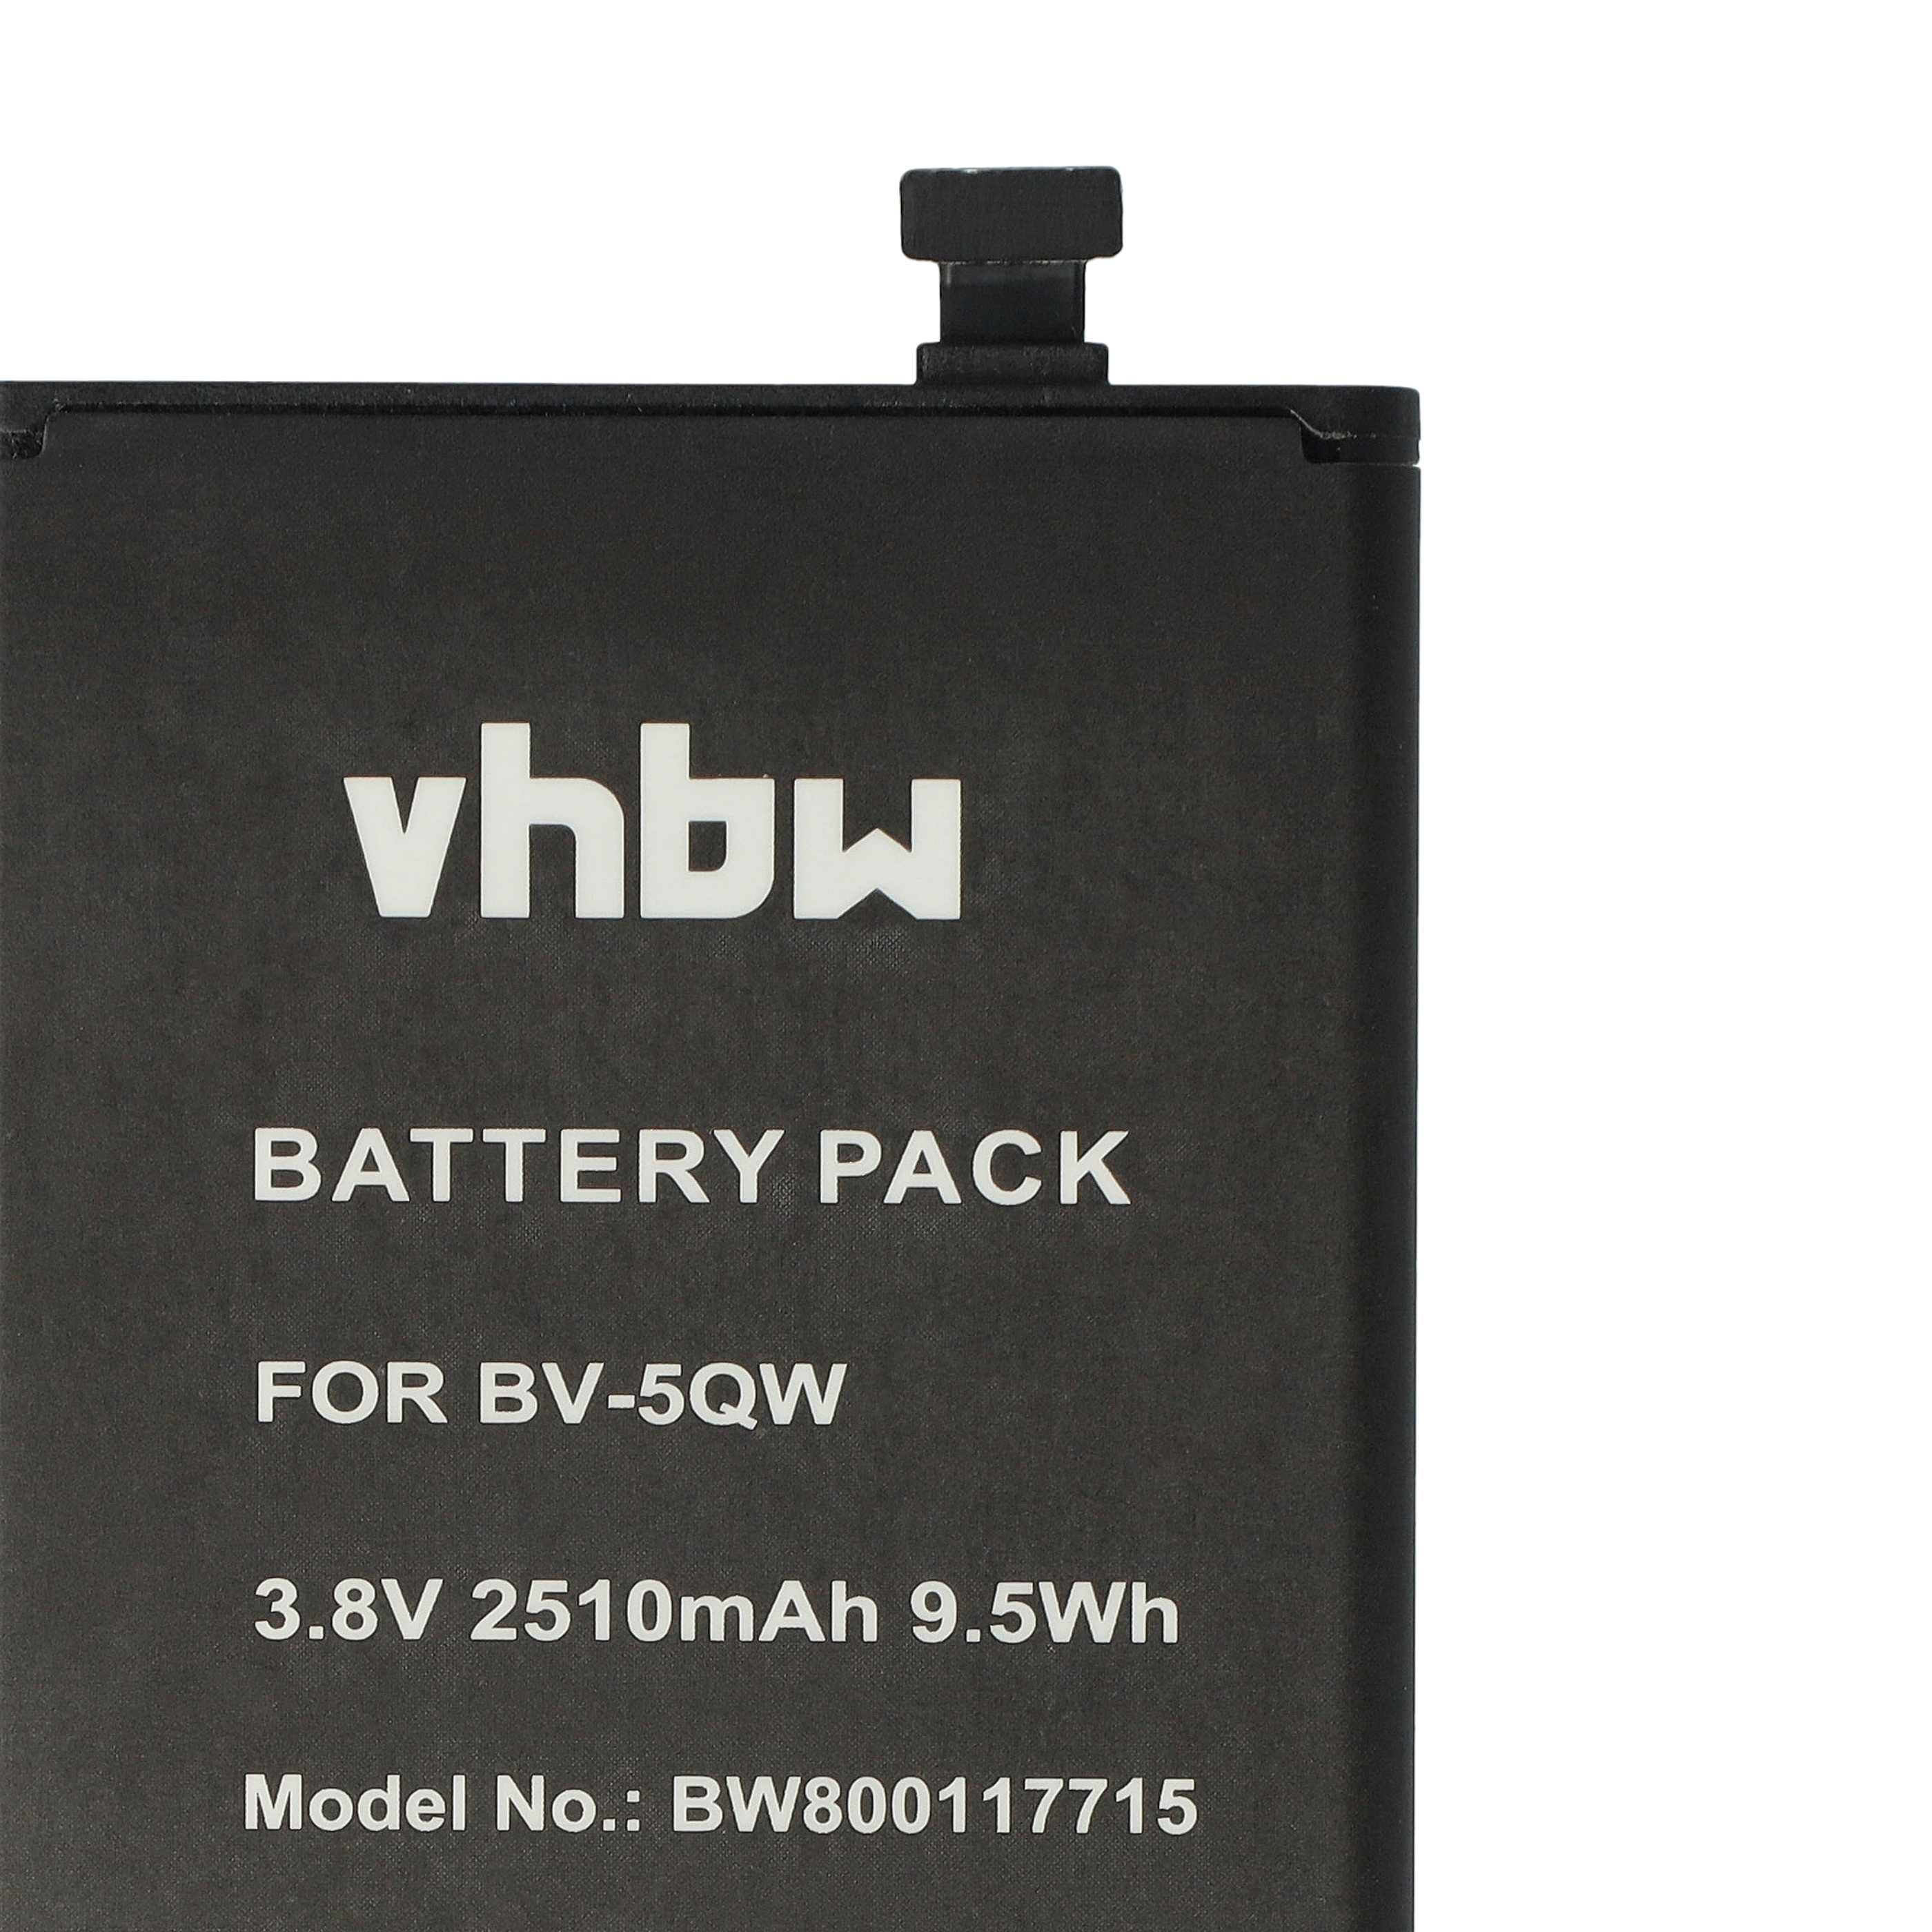 Batterie remplace Microsoft / Nokia BV-5QW pour téléphone portable - 2510mAh, 3,8V, Li-ion